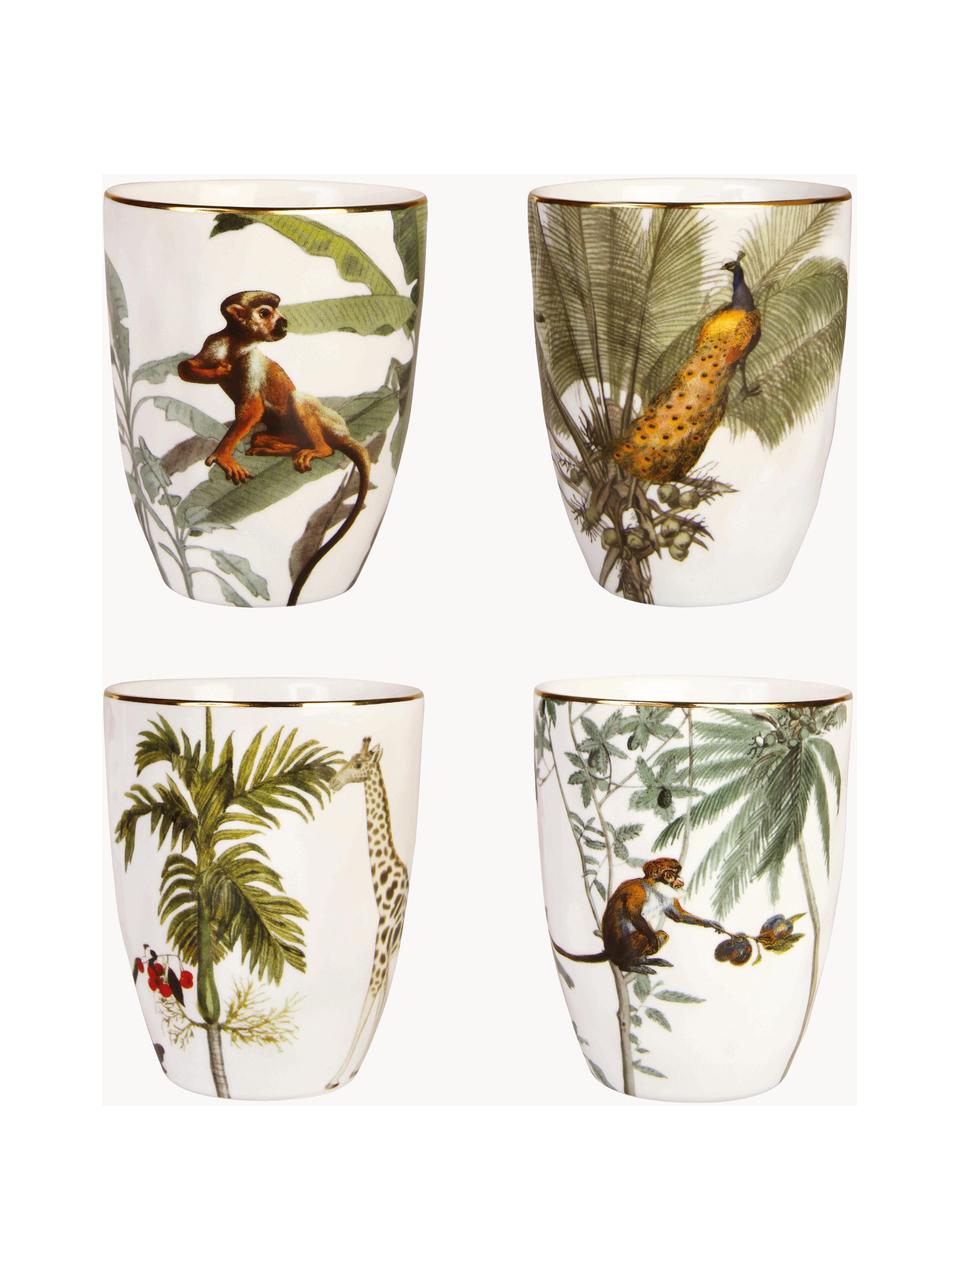 Becher Animaux mit tropischen Motiven, 4er-Set, Porzellan, Bunt, Ø 8 x H 10 cm